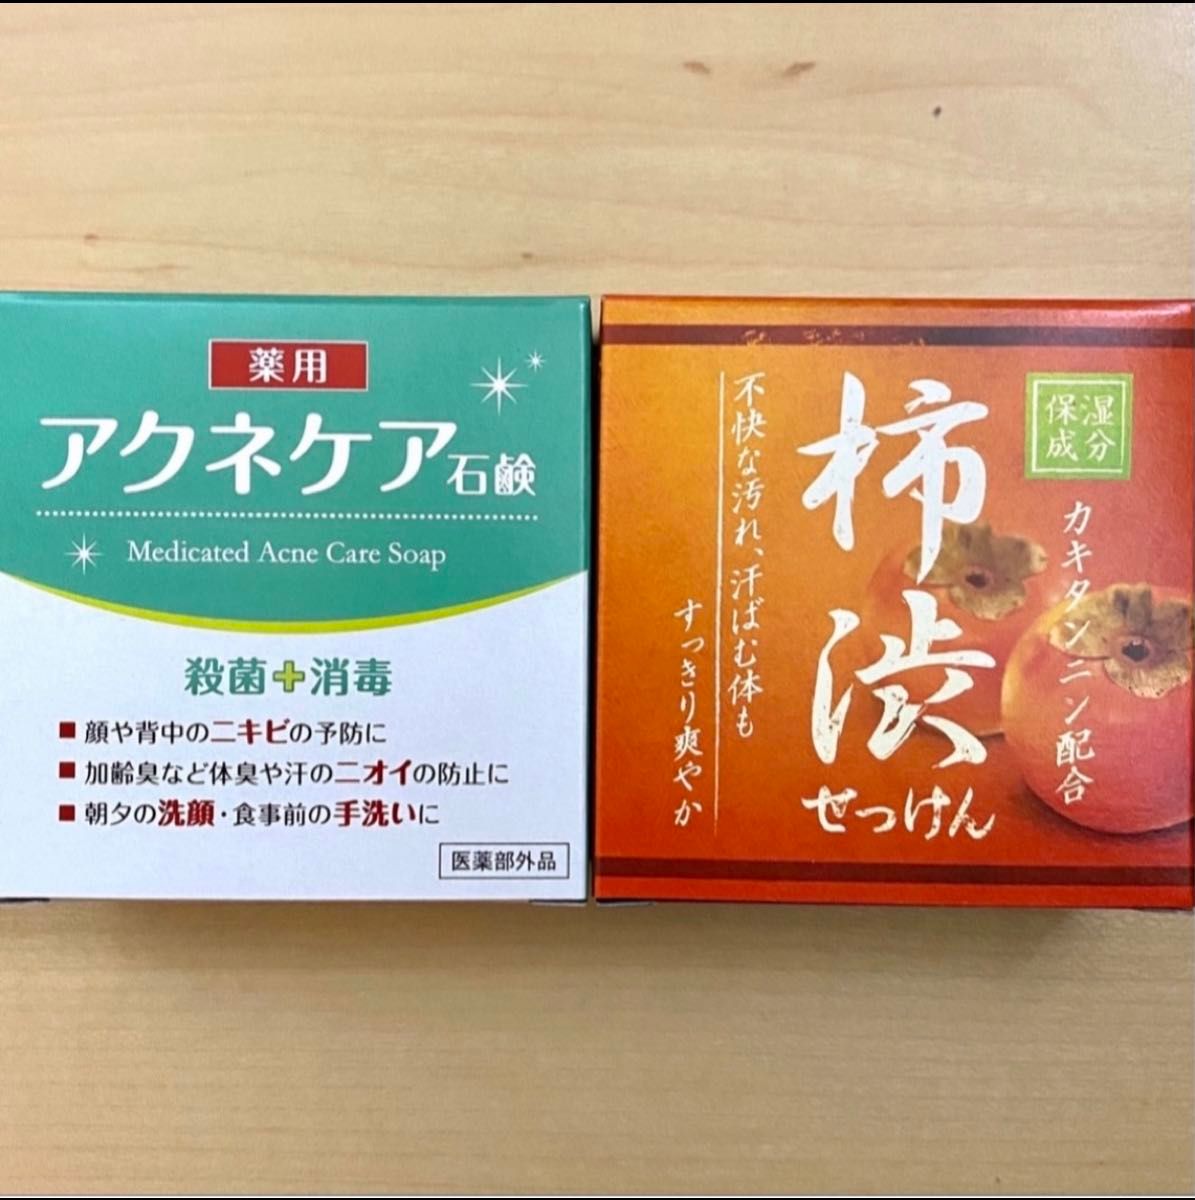 柿渋&薬用アクネケア石鹸